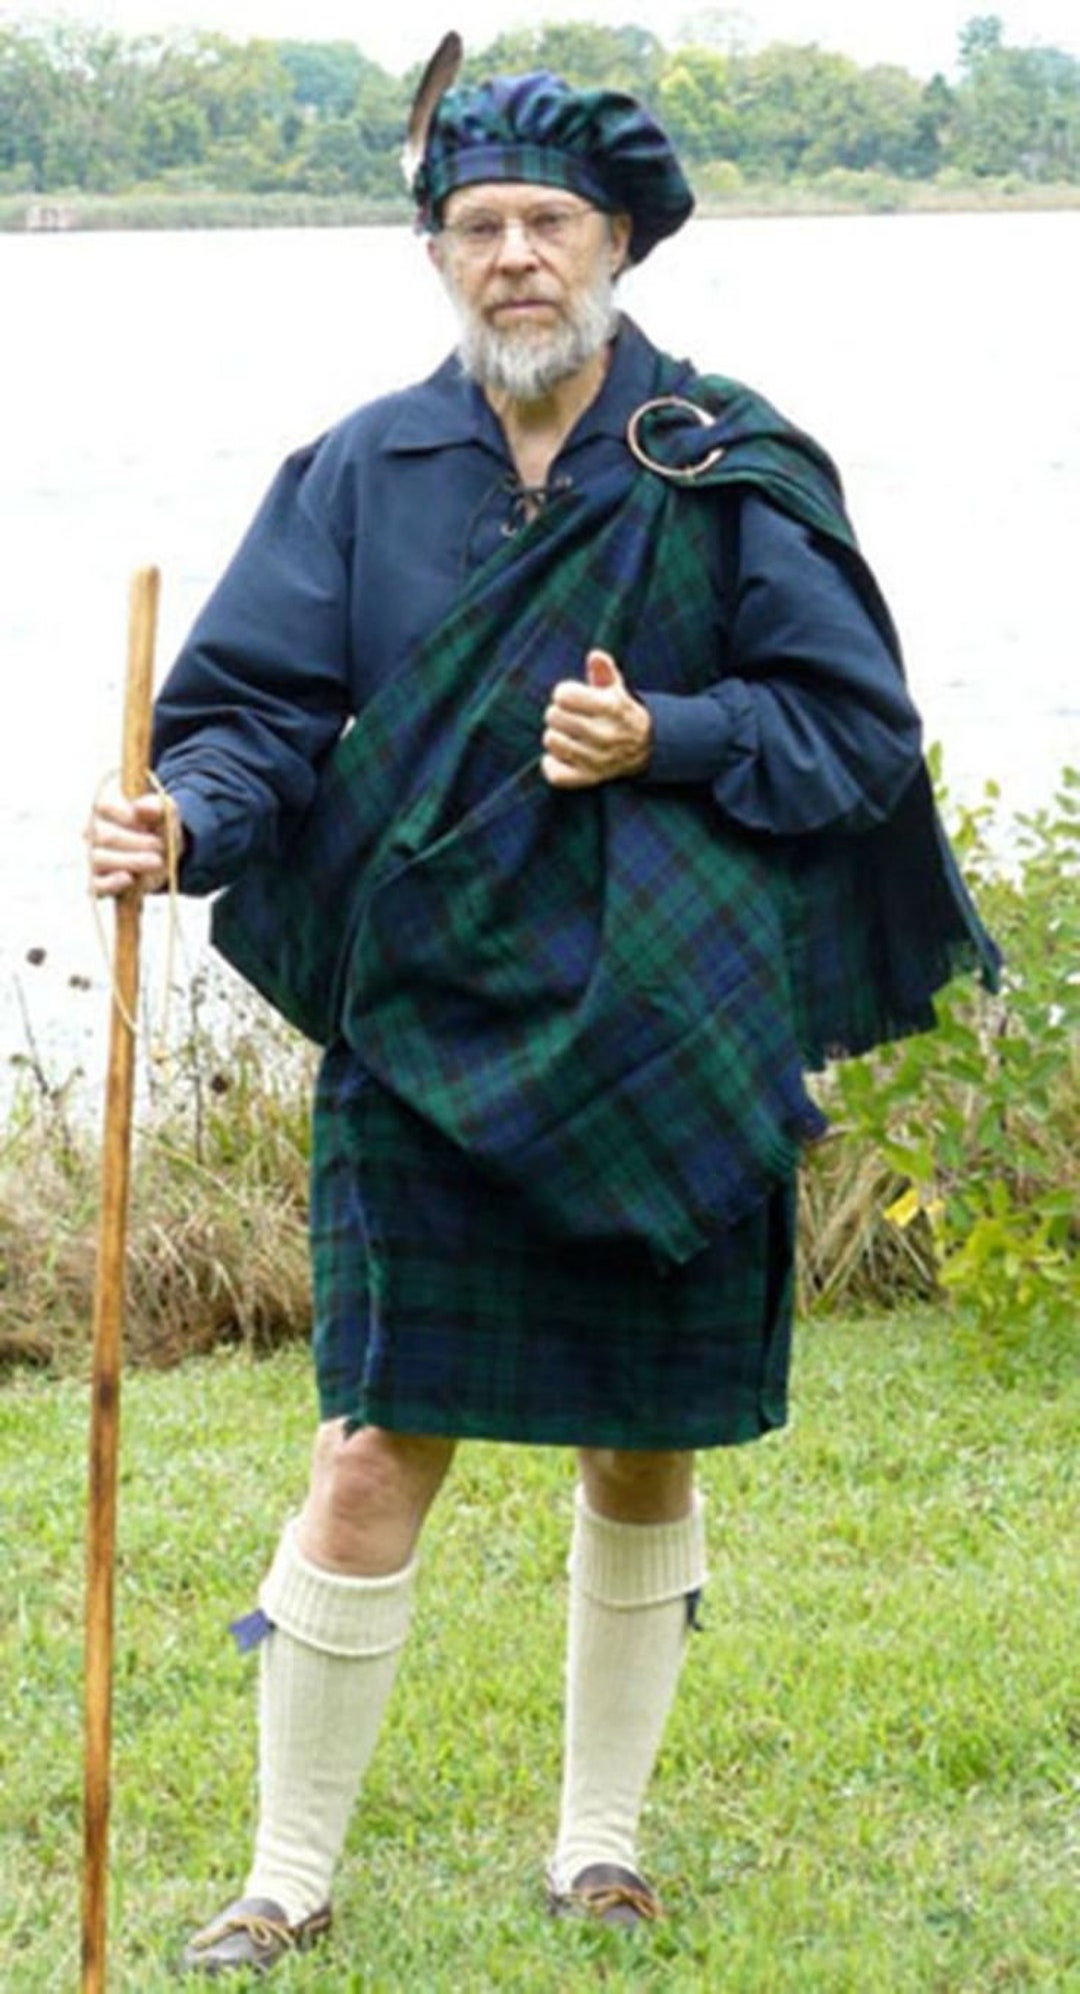 Great Kilt Men's Scottish Great Kilt For Men Available in 50+